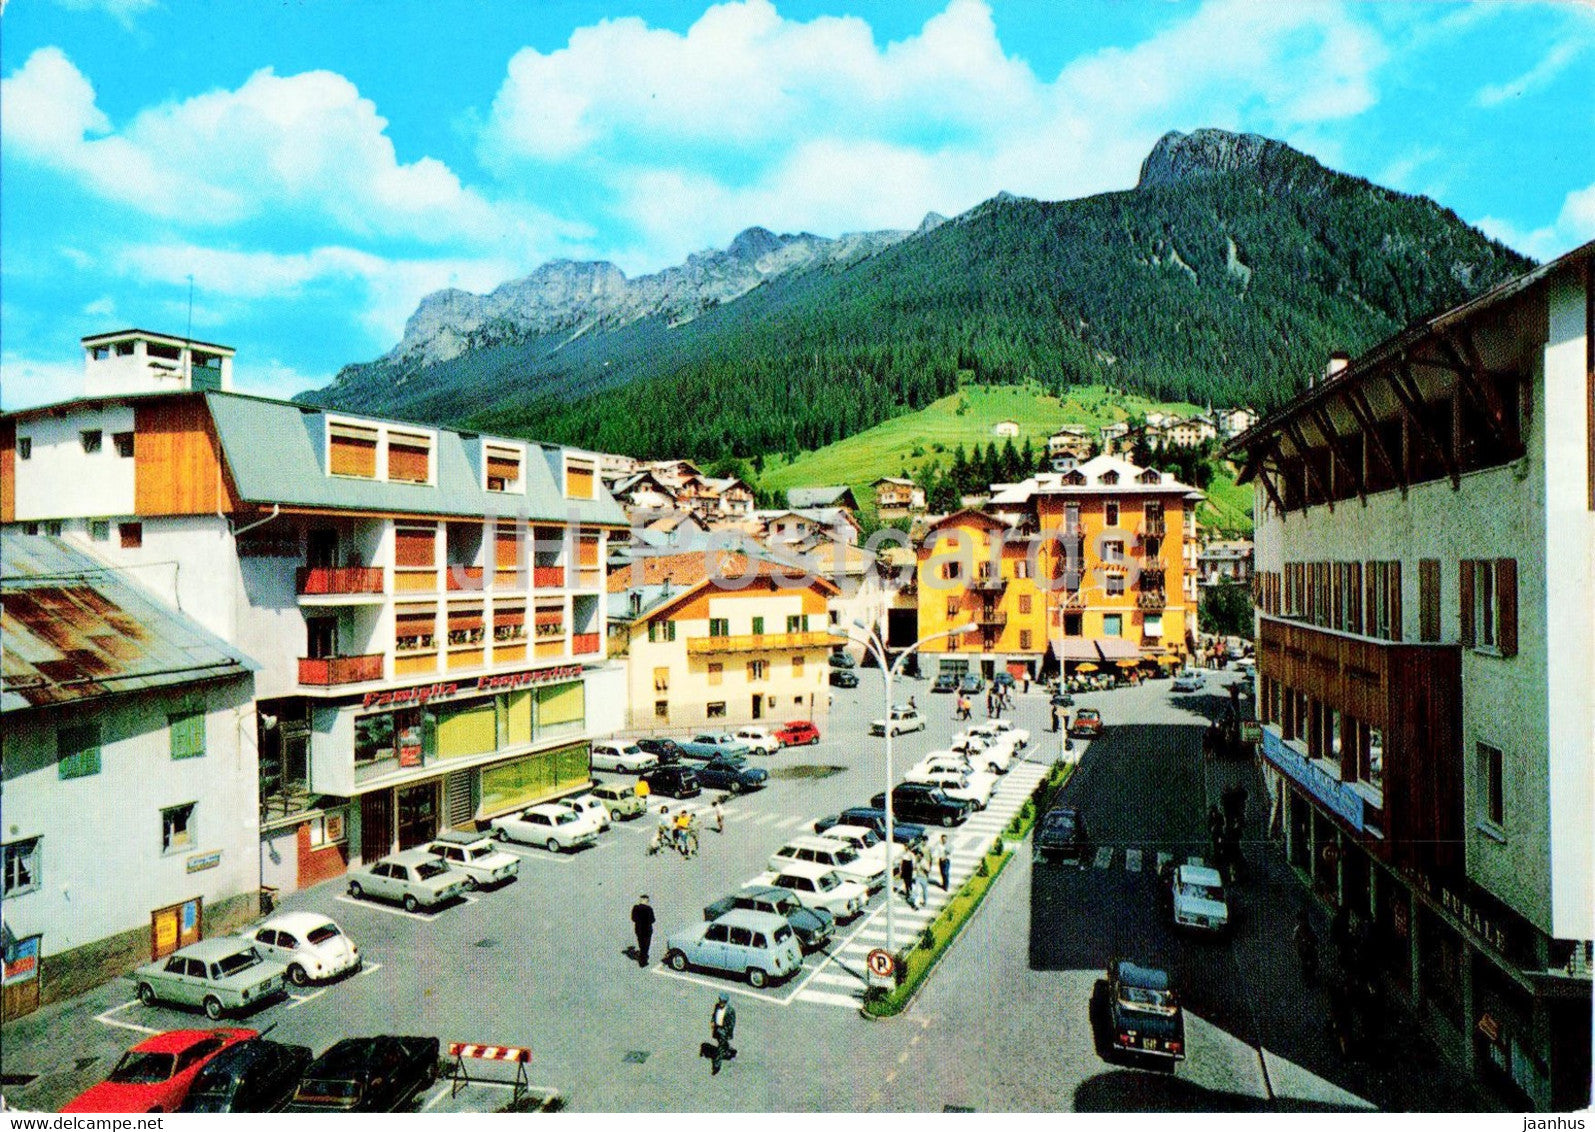 Moena 1184 m - Piazza Cesare Battisti e panorama - Dolomiti - Trentino - Italy - unused - JH Postcards